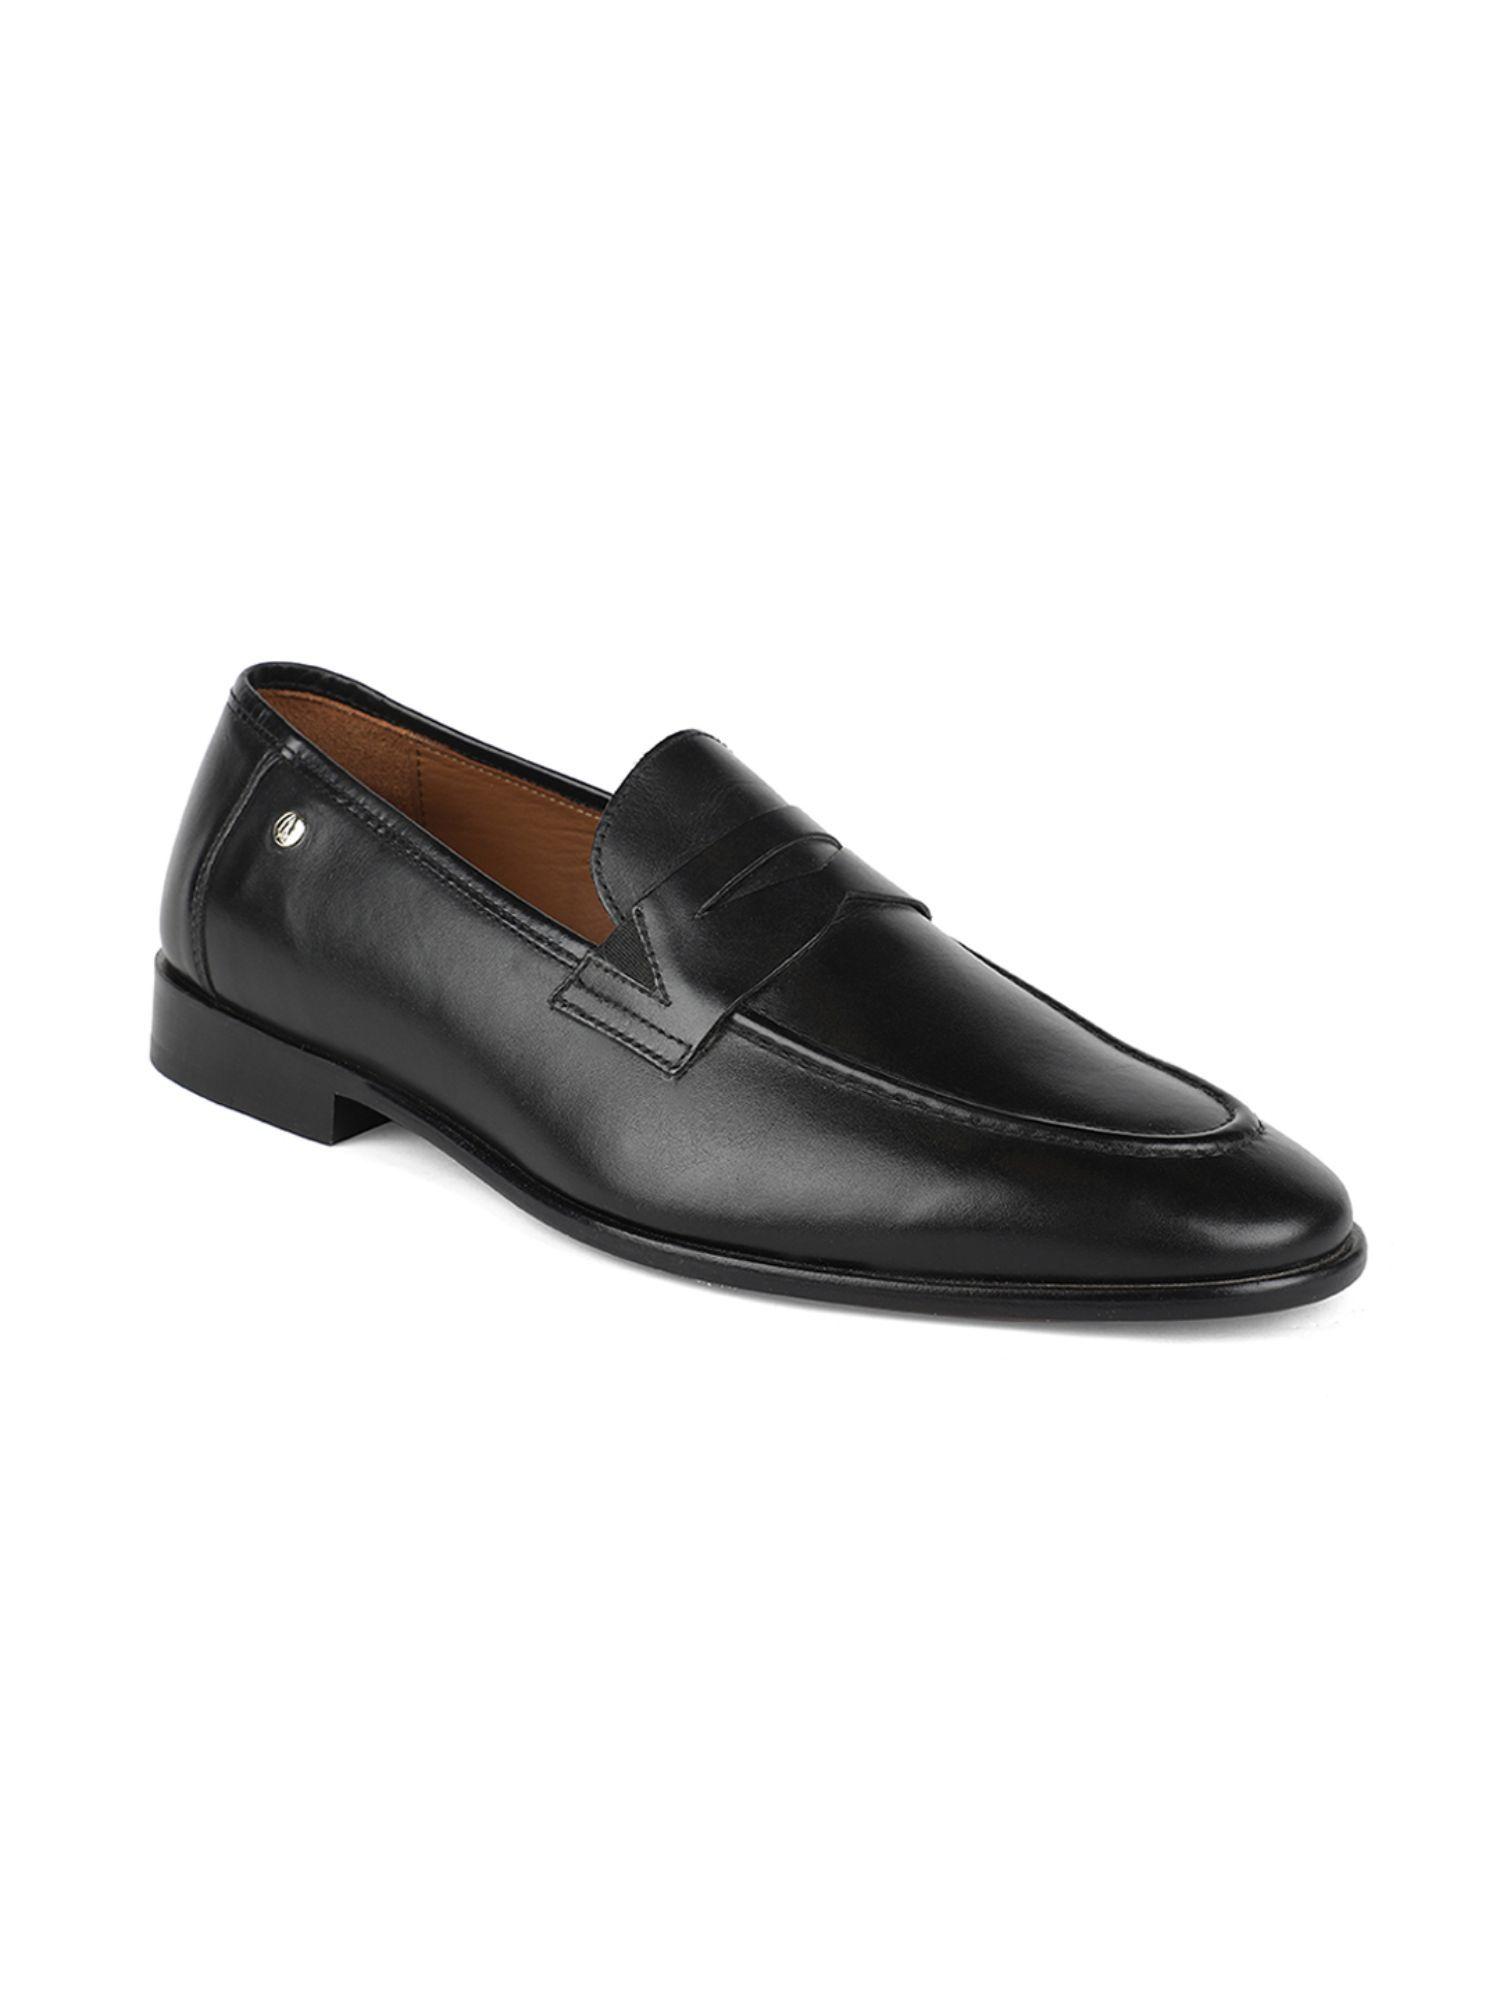 mens black slip on formal loafers